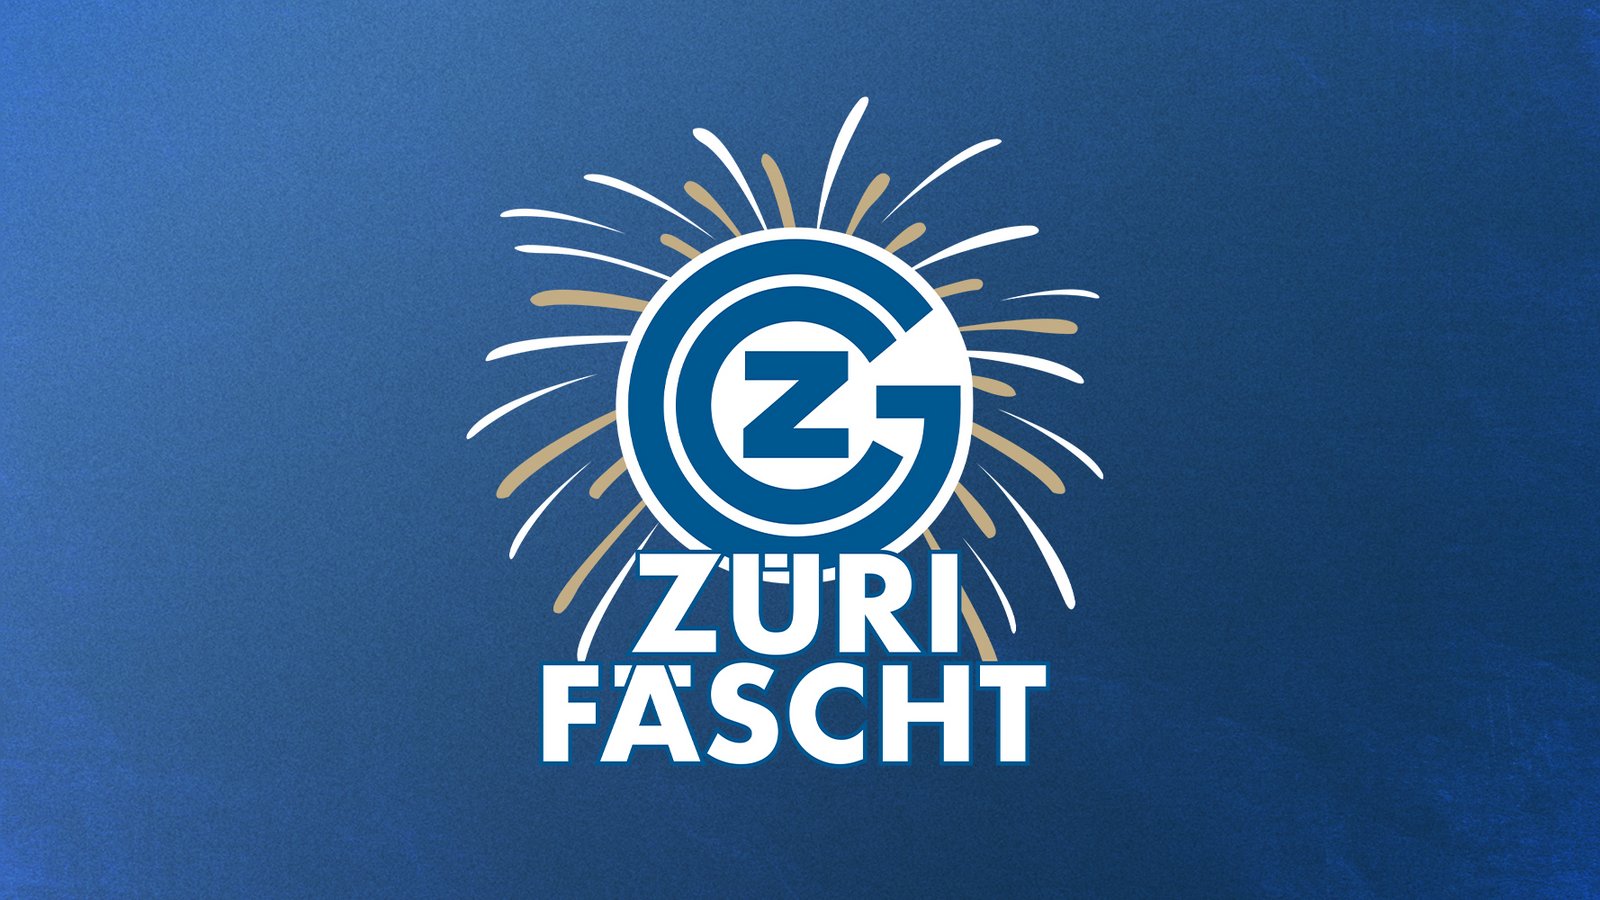 GC ZÜRICH AT THE ZÜRI FÄSCHT 2023